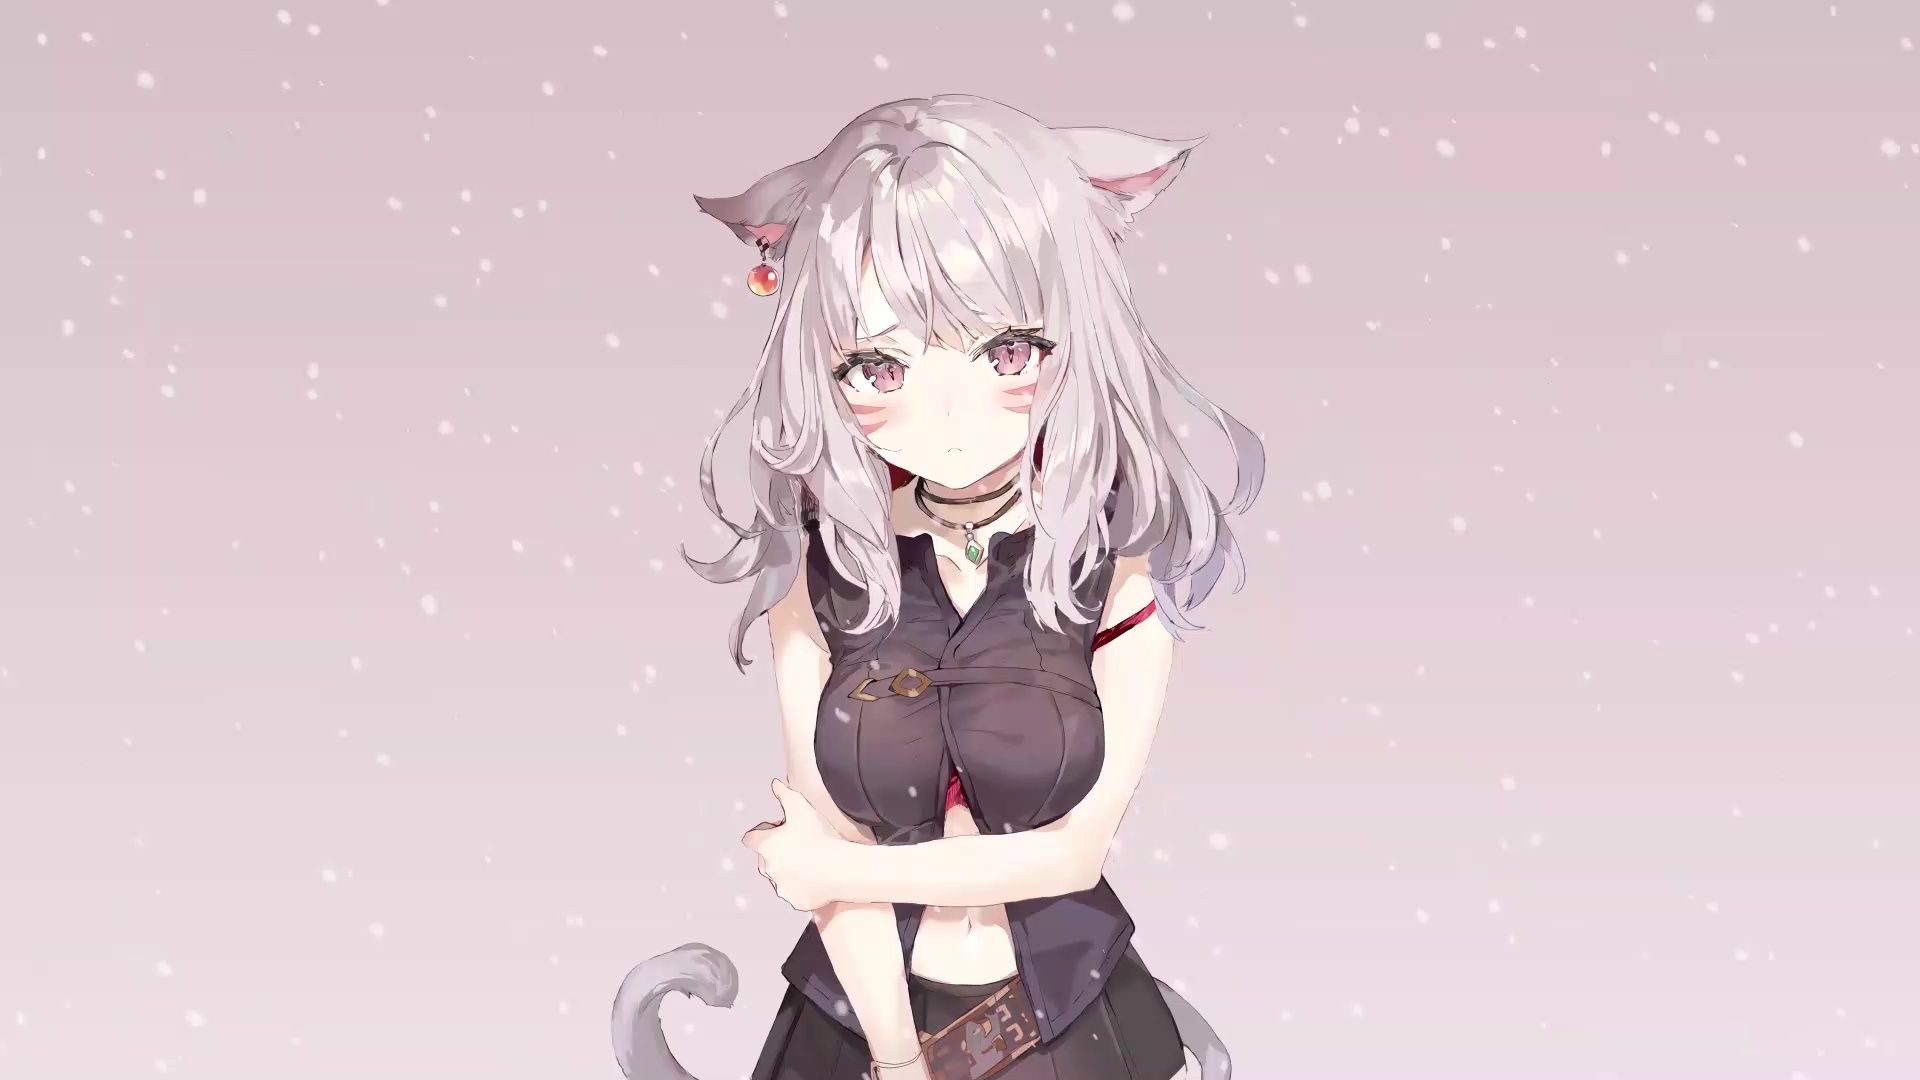 Cat Ears Anime Girl Feeling Cold Live Wallpaper